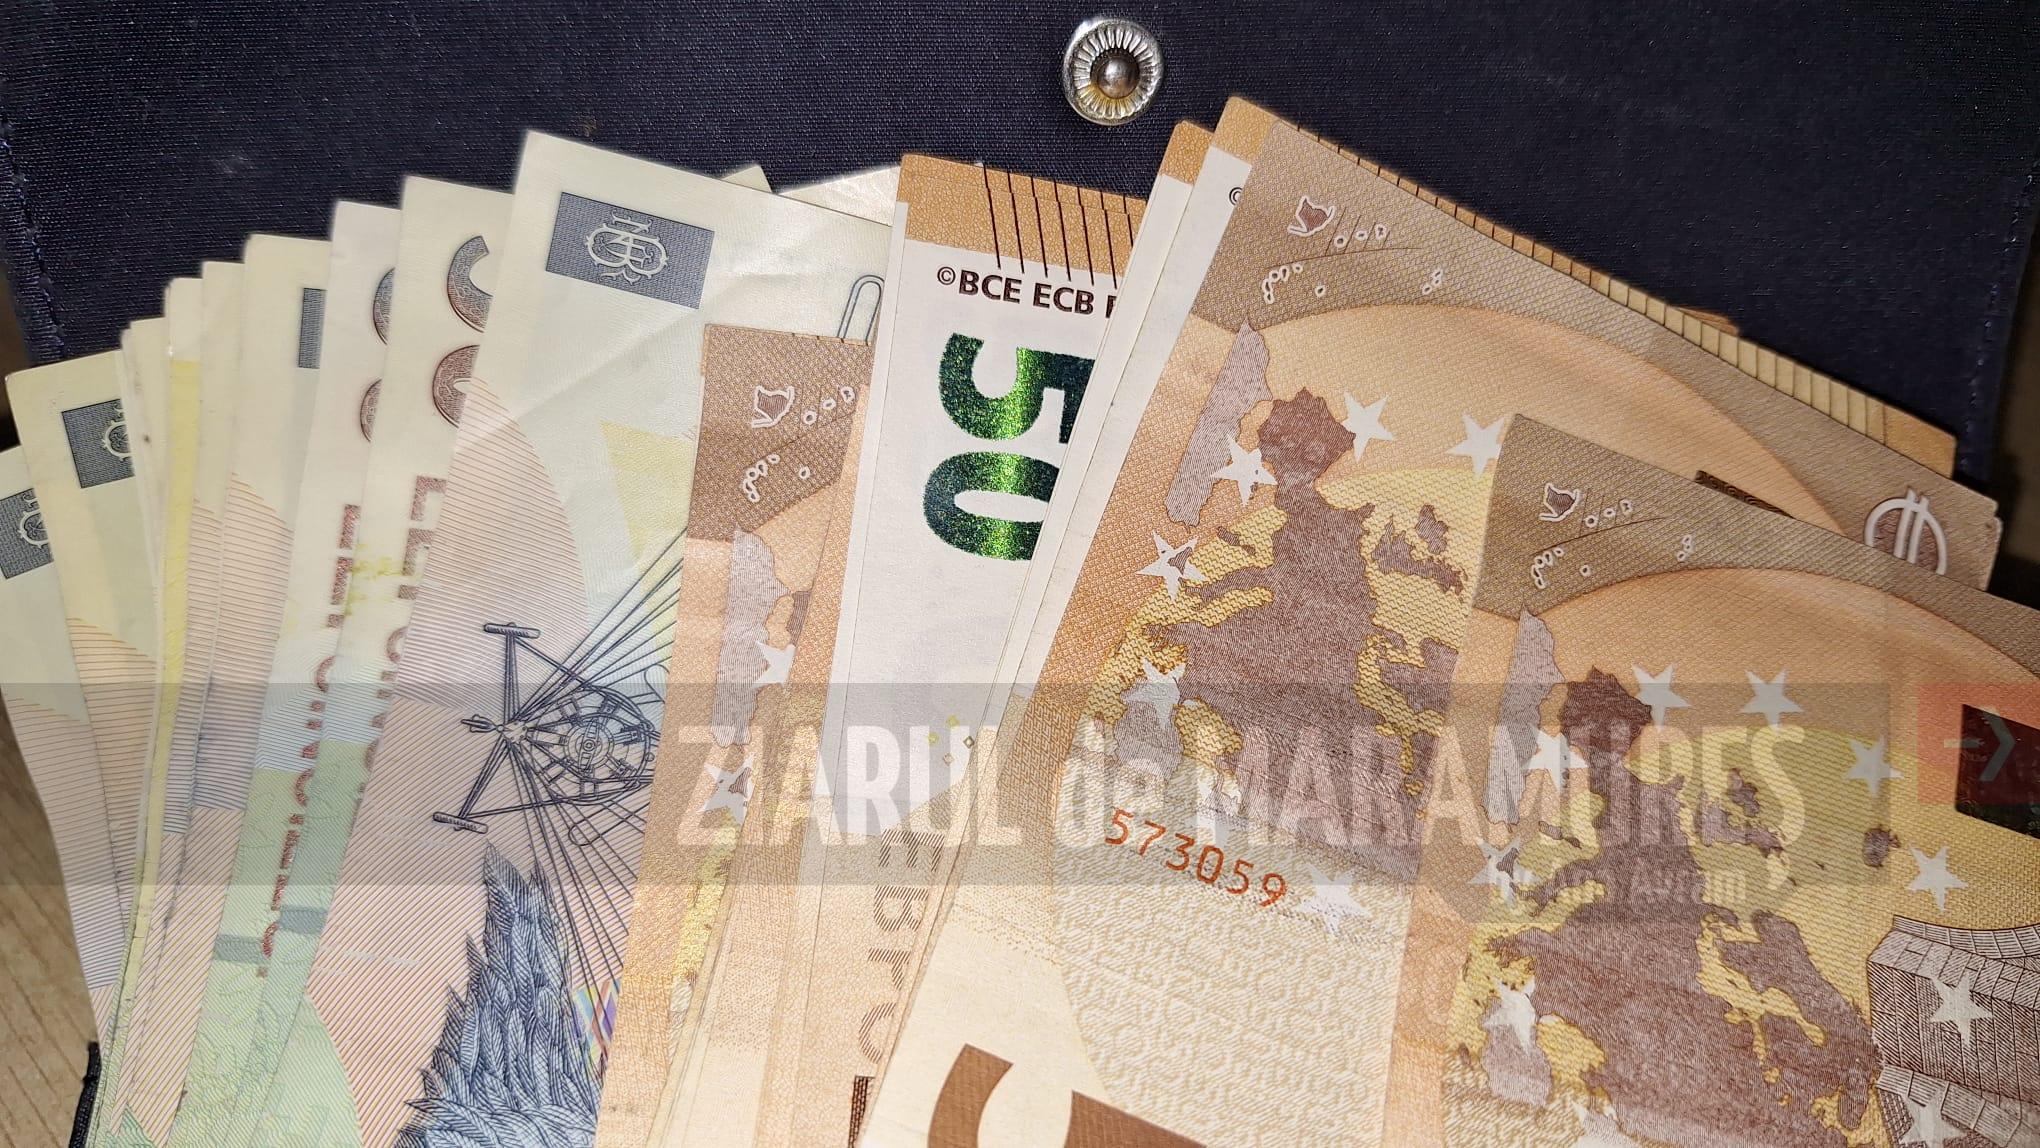 Un sighetean a găsit pe stradă un portofel care avea 1.595 de euro și 904 lei, pe care l-a dus la poliție